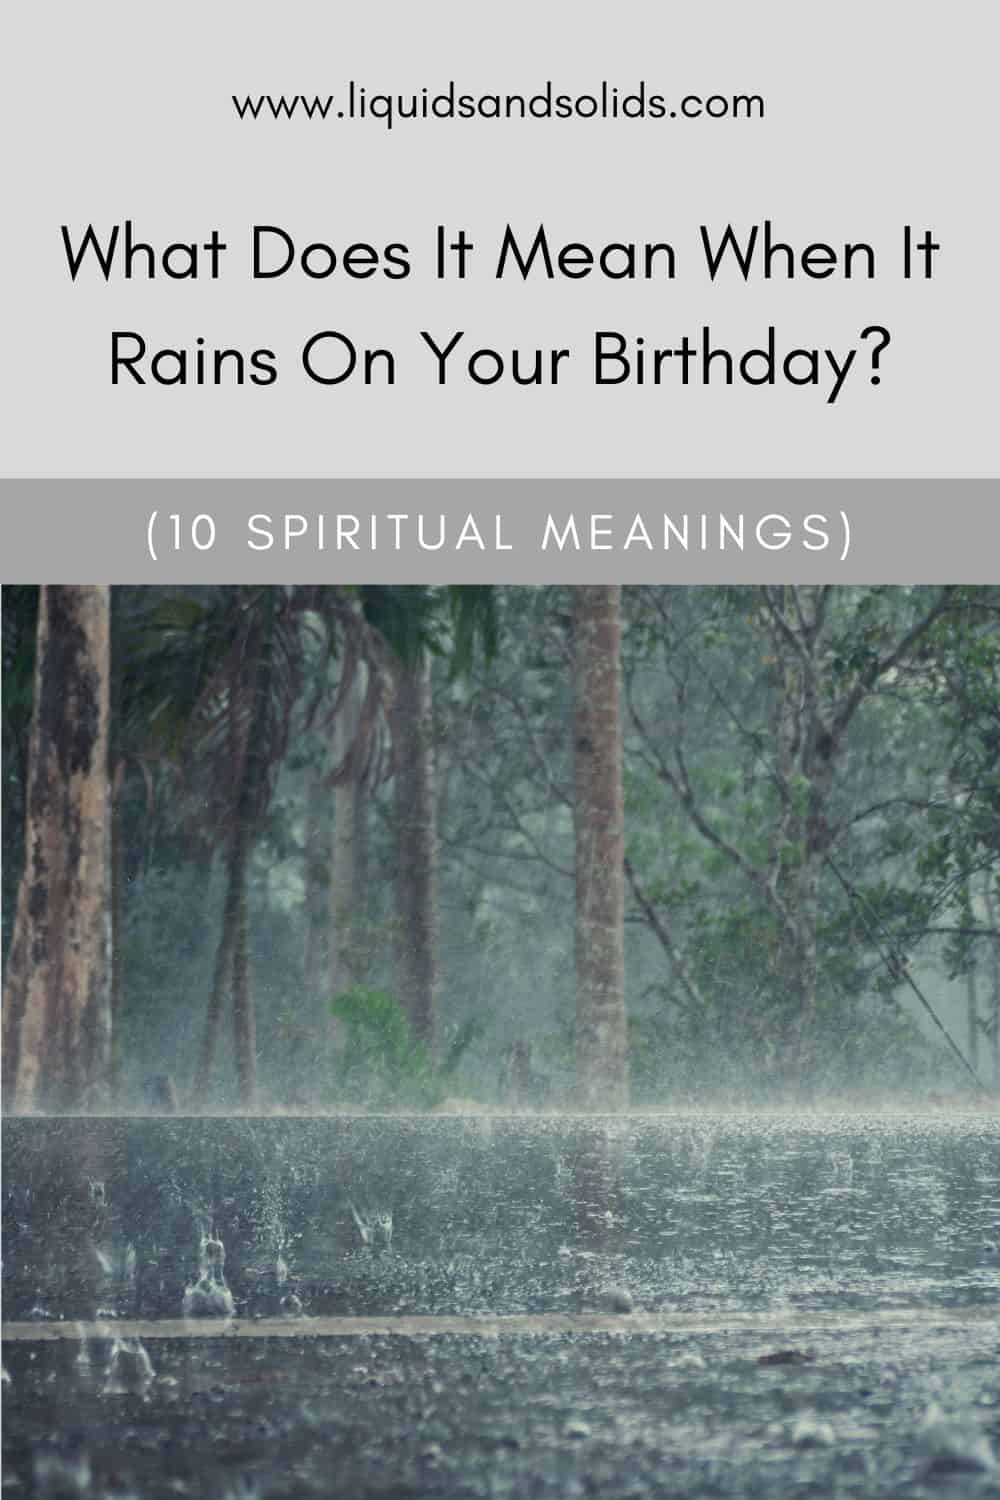  ماذا يعني عندما تمطر في عيد ميلادك؟ (10 معاني روحية)